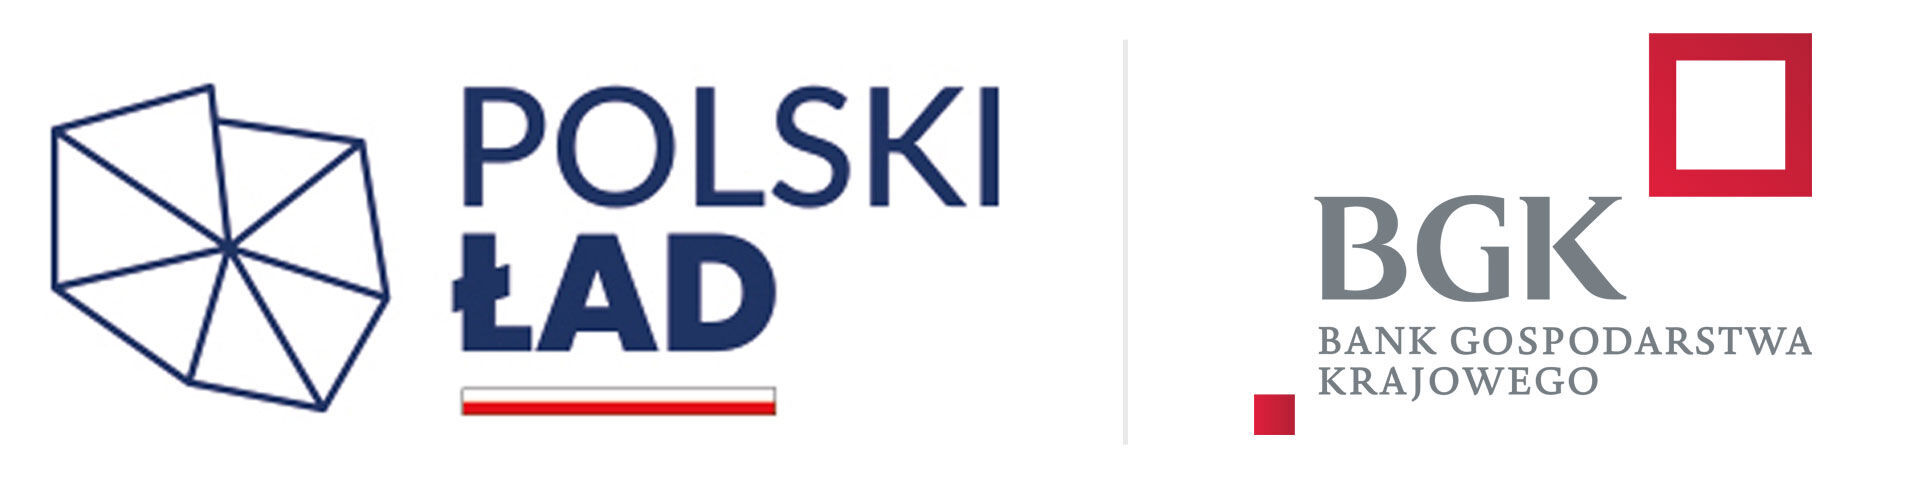 Loga dwóch polskich instytucji: po lewej "Polski Ład" z graficznym motywem koperty, po prawej logo "BGK - Bank Gospodarstwa Krajowego" z czerwonym kwadratem.